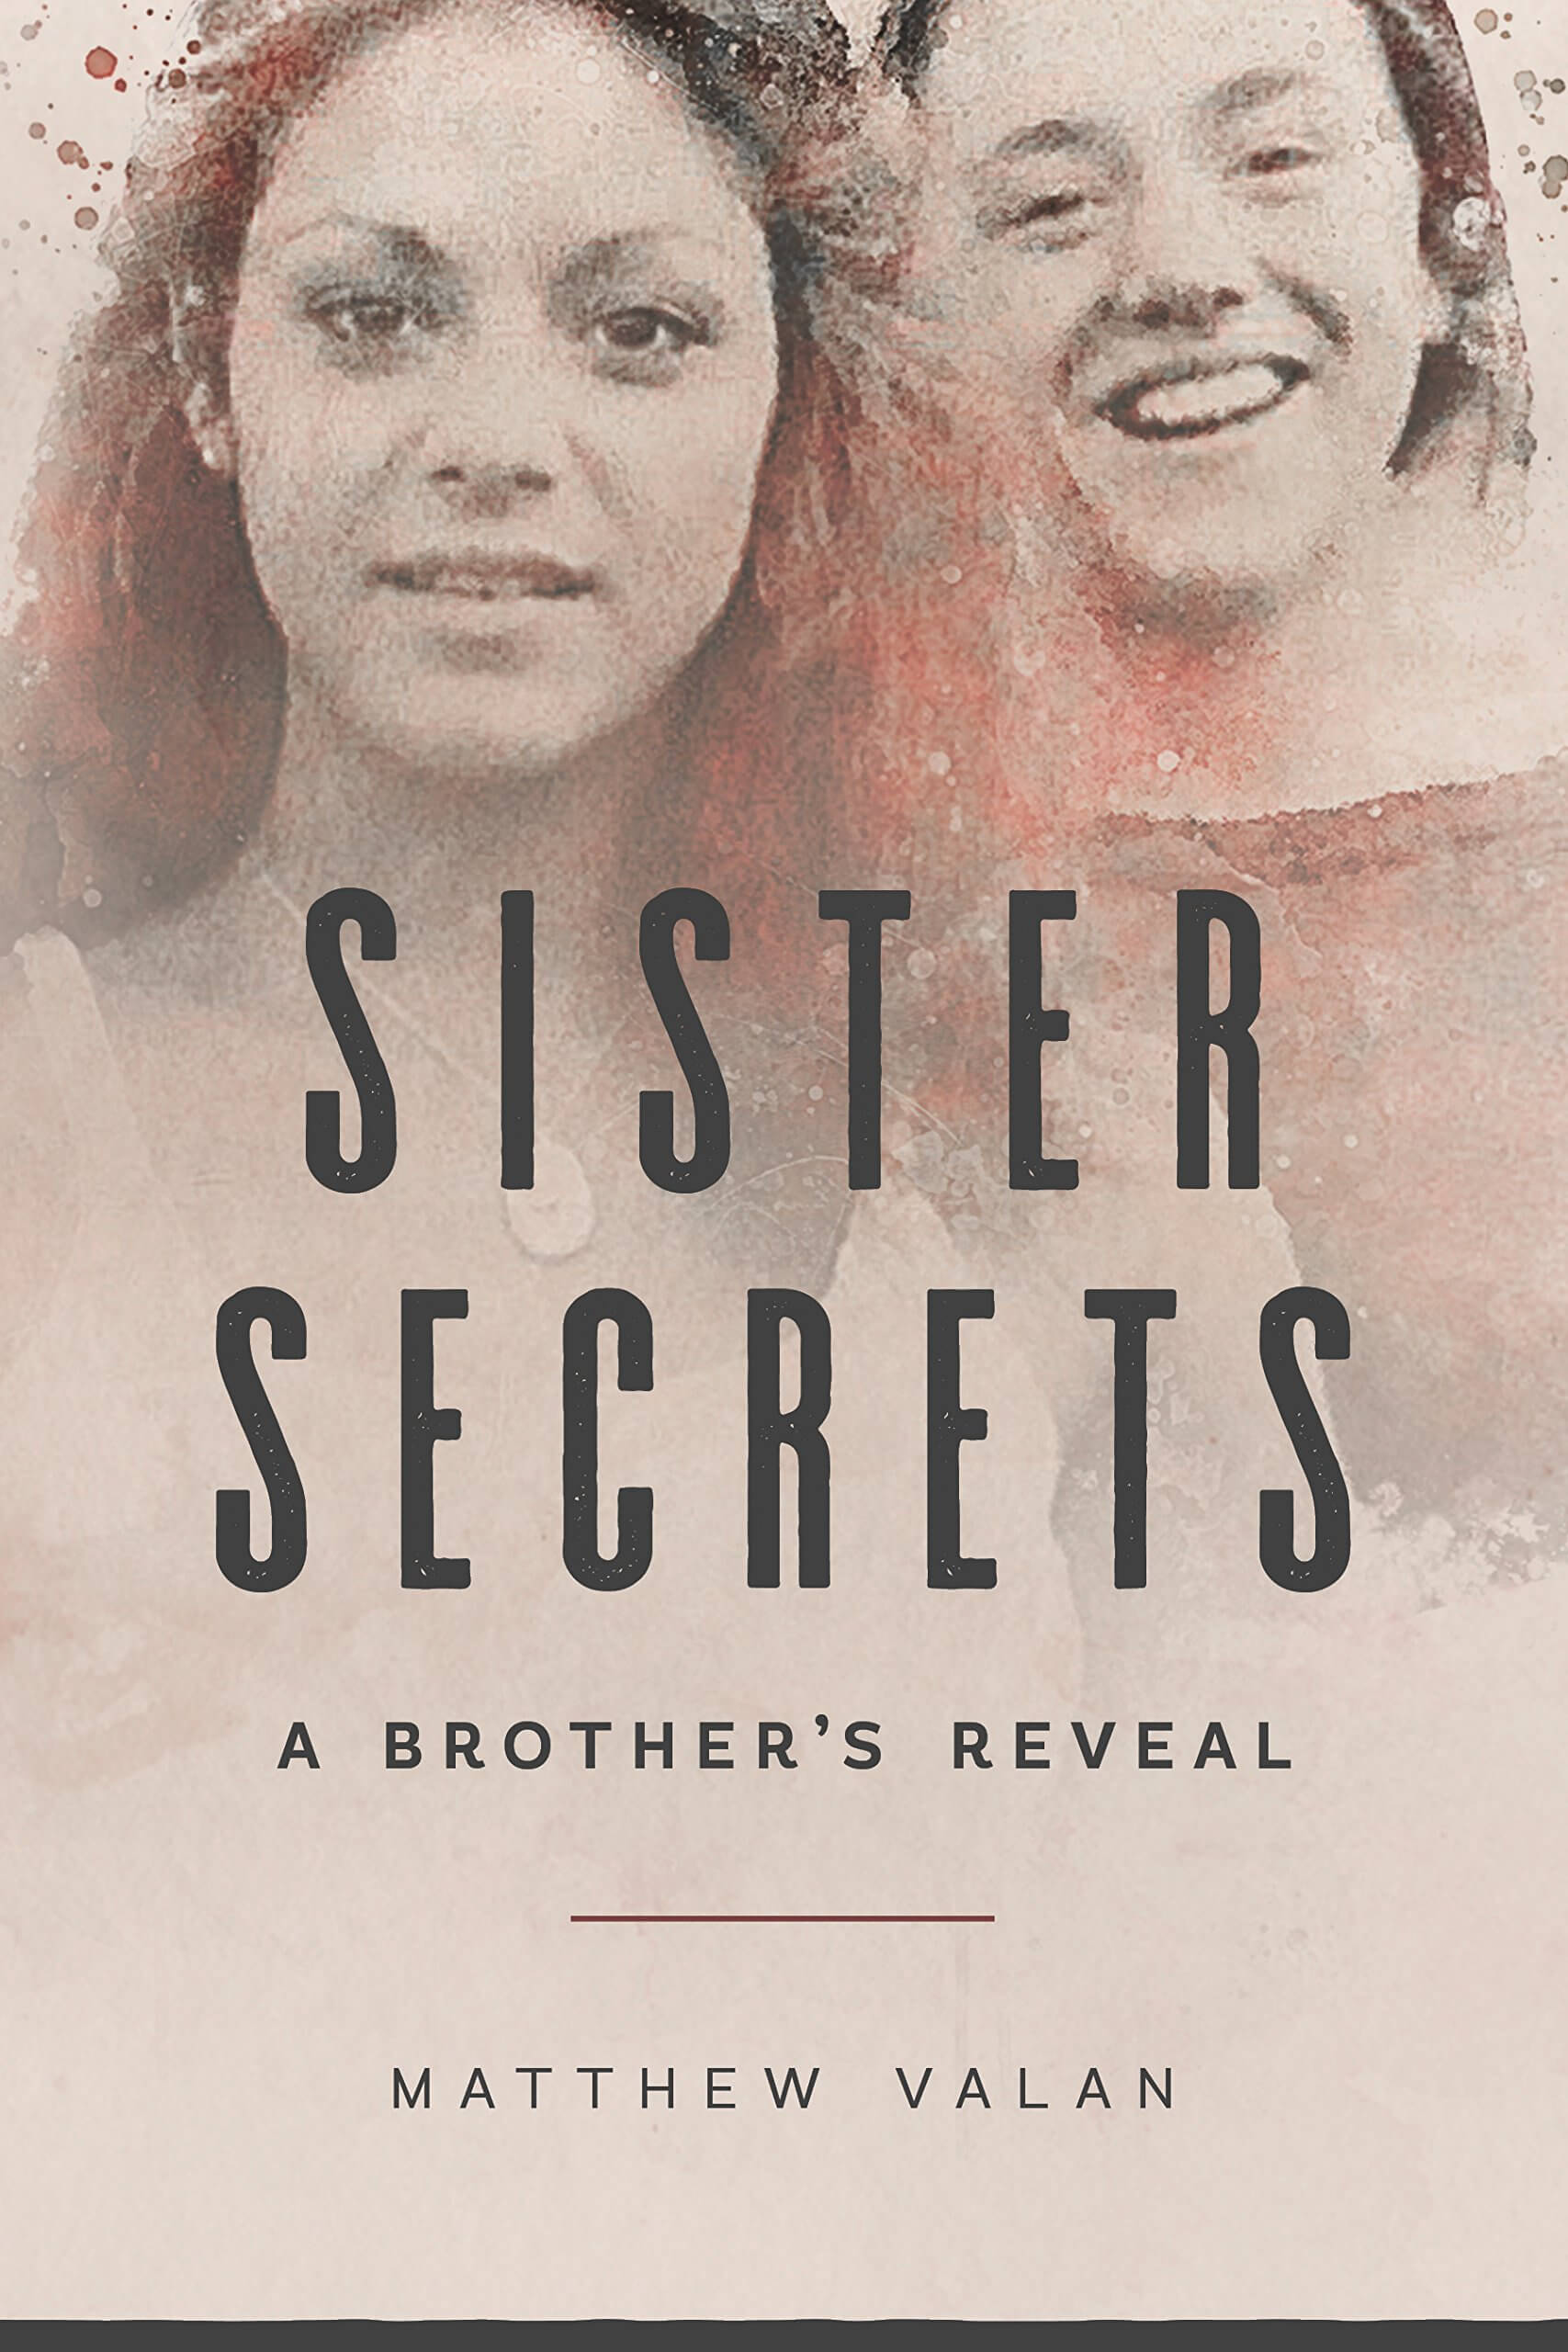 The secret sisters. Sisterhood Secrets.